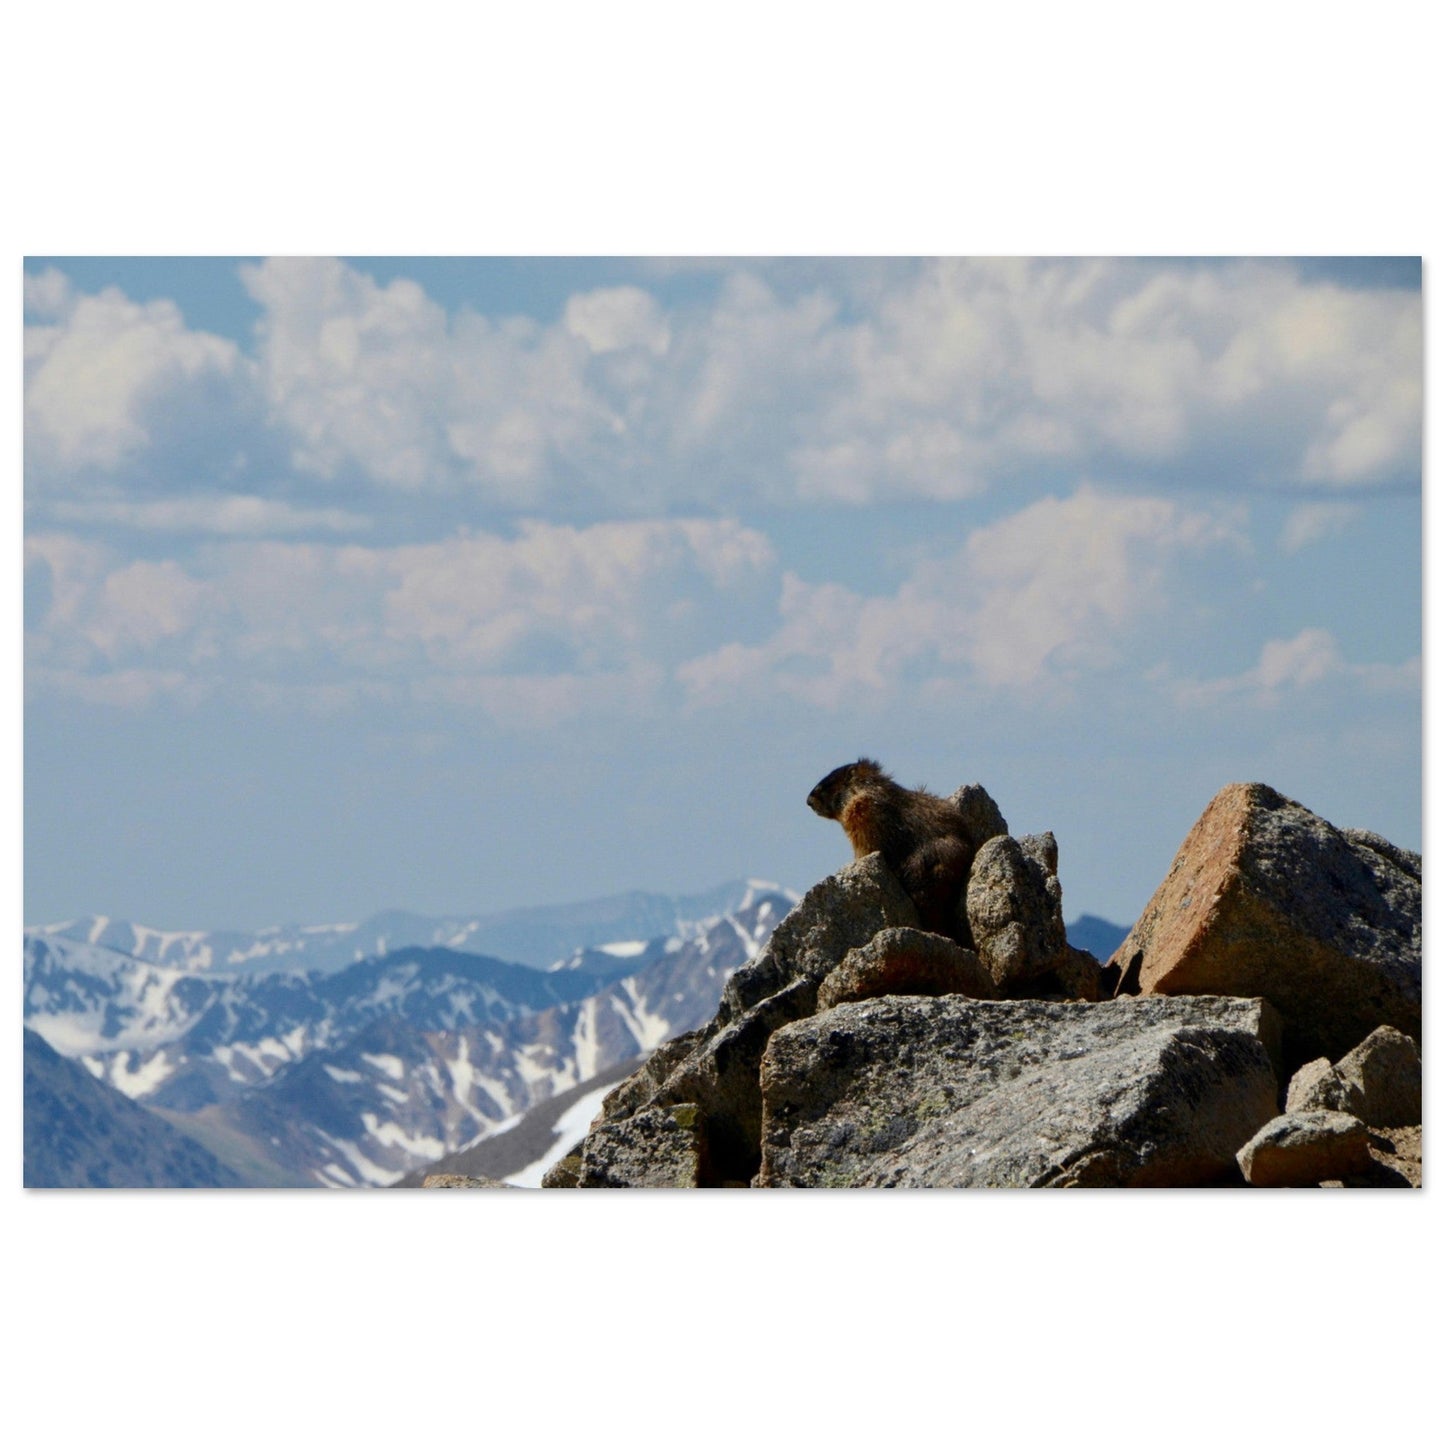 Vente Photo d'une marmotte dans les Alpes #2 - Tableau photo paysage